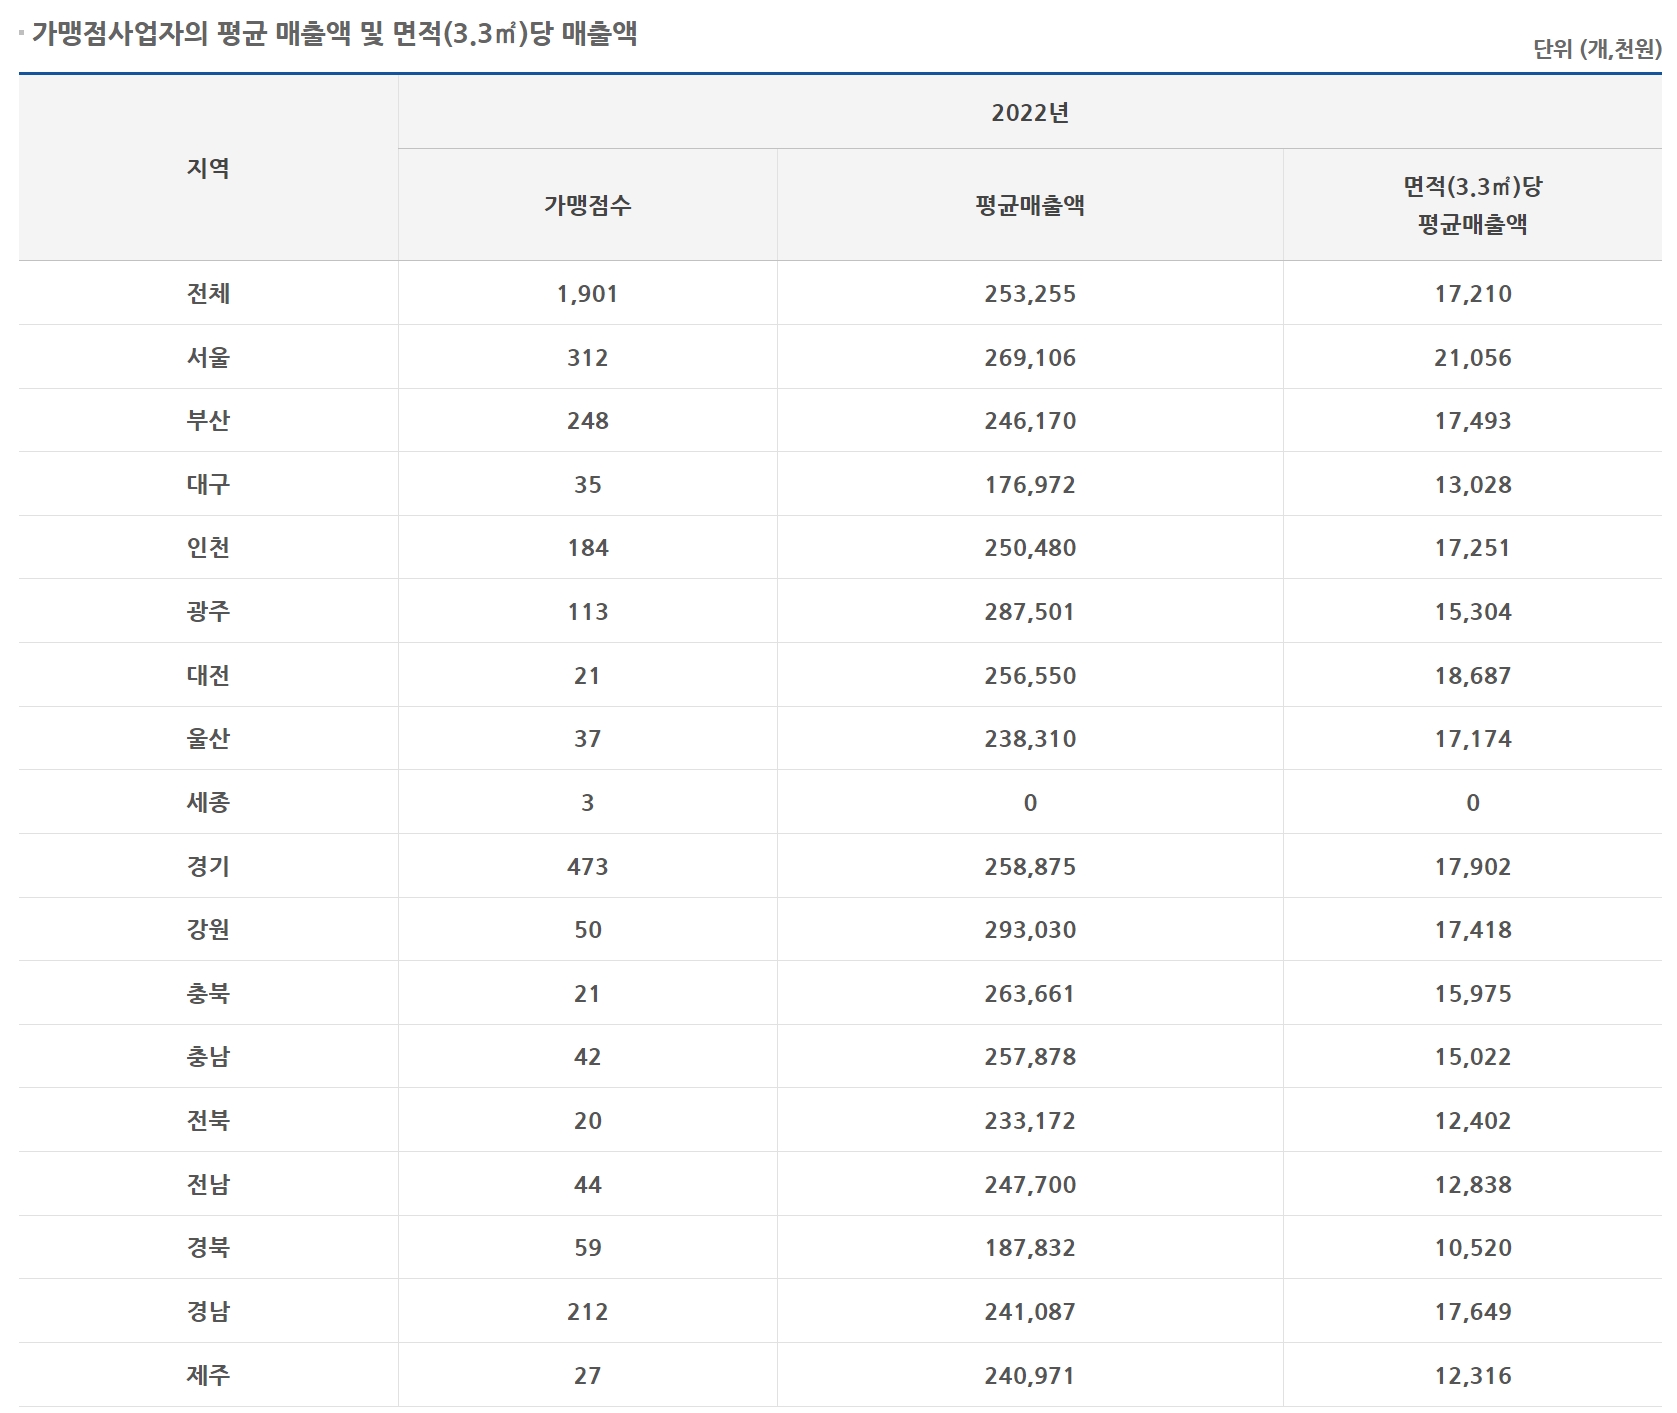 컴포즈커피-매출자료-2022년(출처. 공정거래위원회)